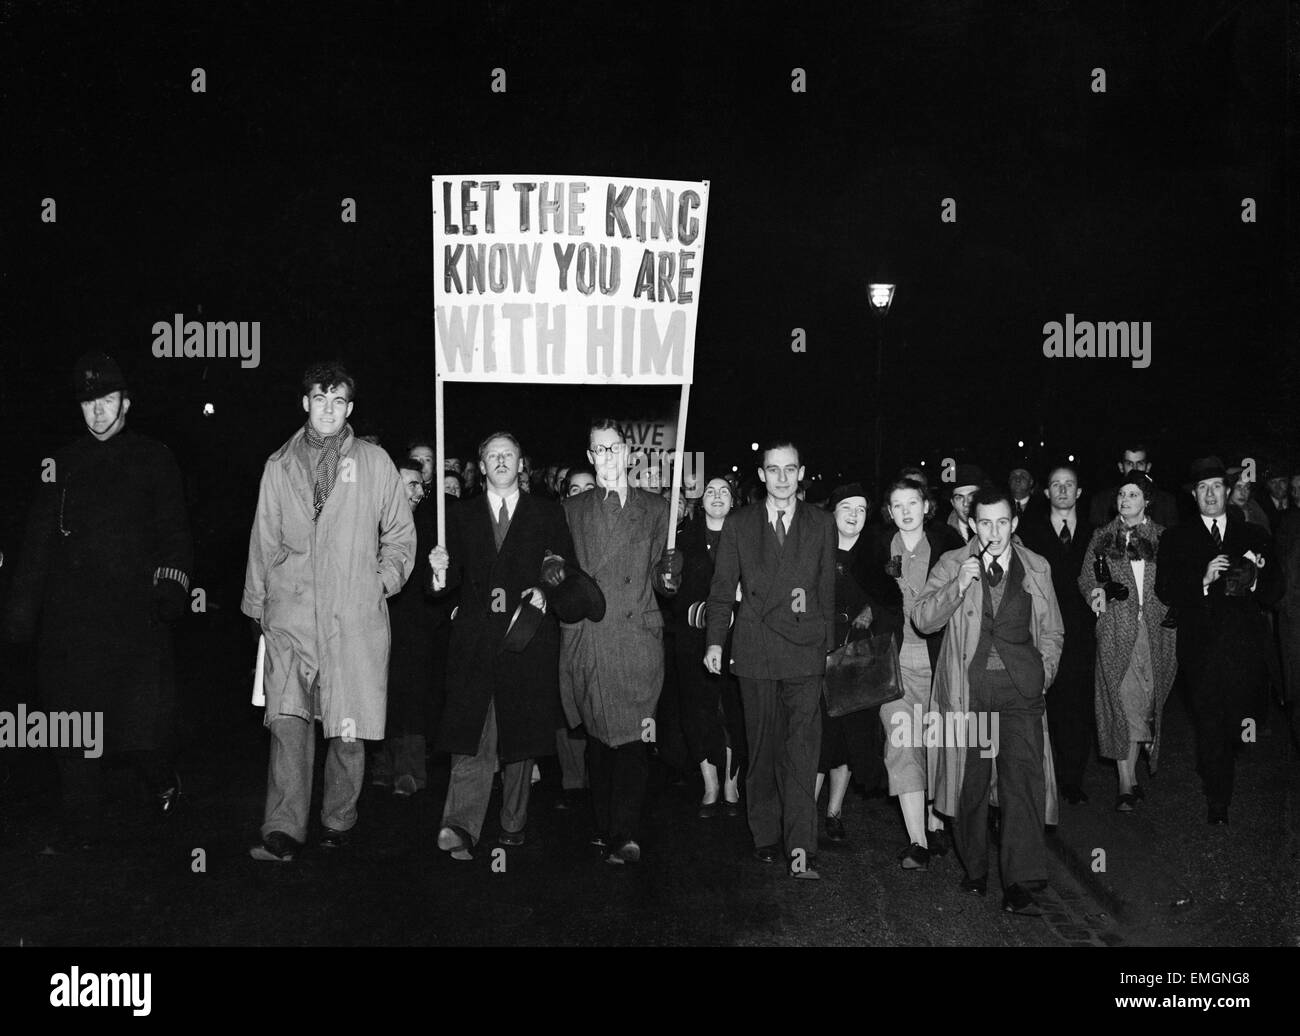 King Edward VIII abdicazione crisi Dicembre 1936. Royal sostenitori marciando attraverso Londra con un banner che recita "Lasciate che il re sa che sono con lui". Foto Stock